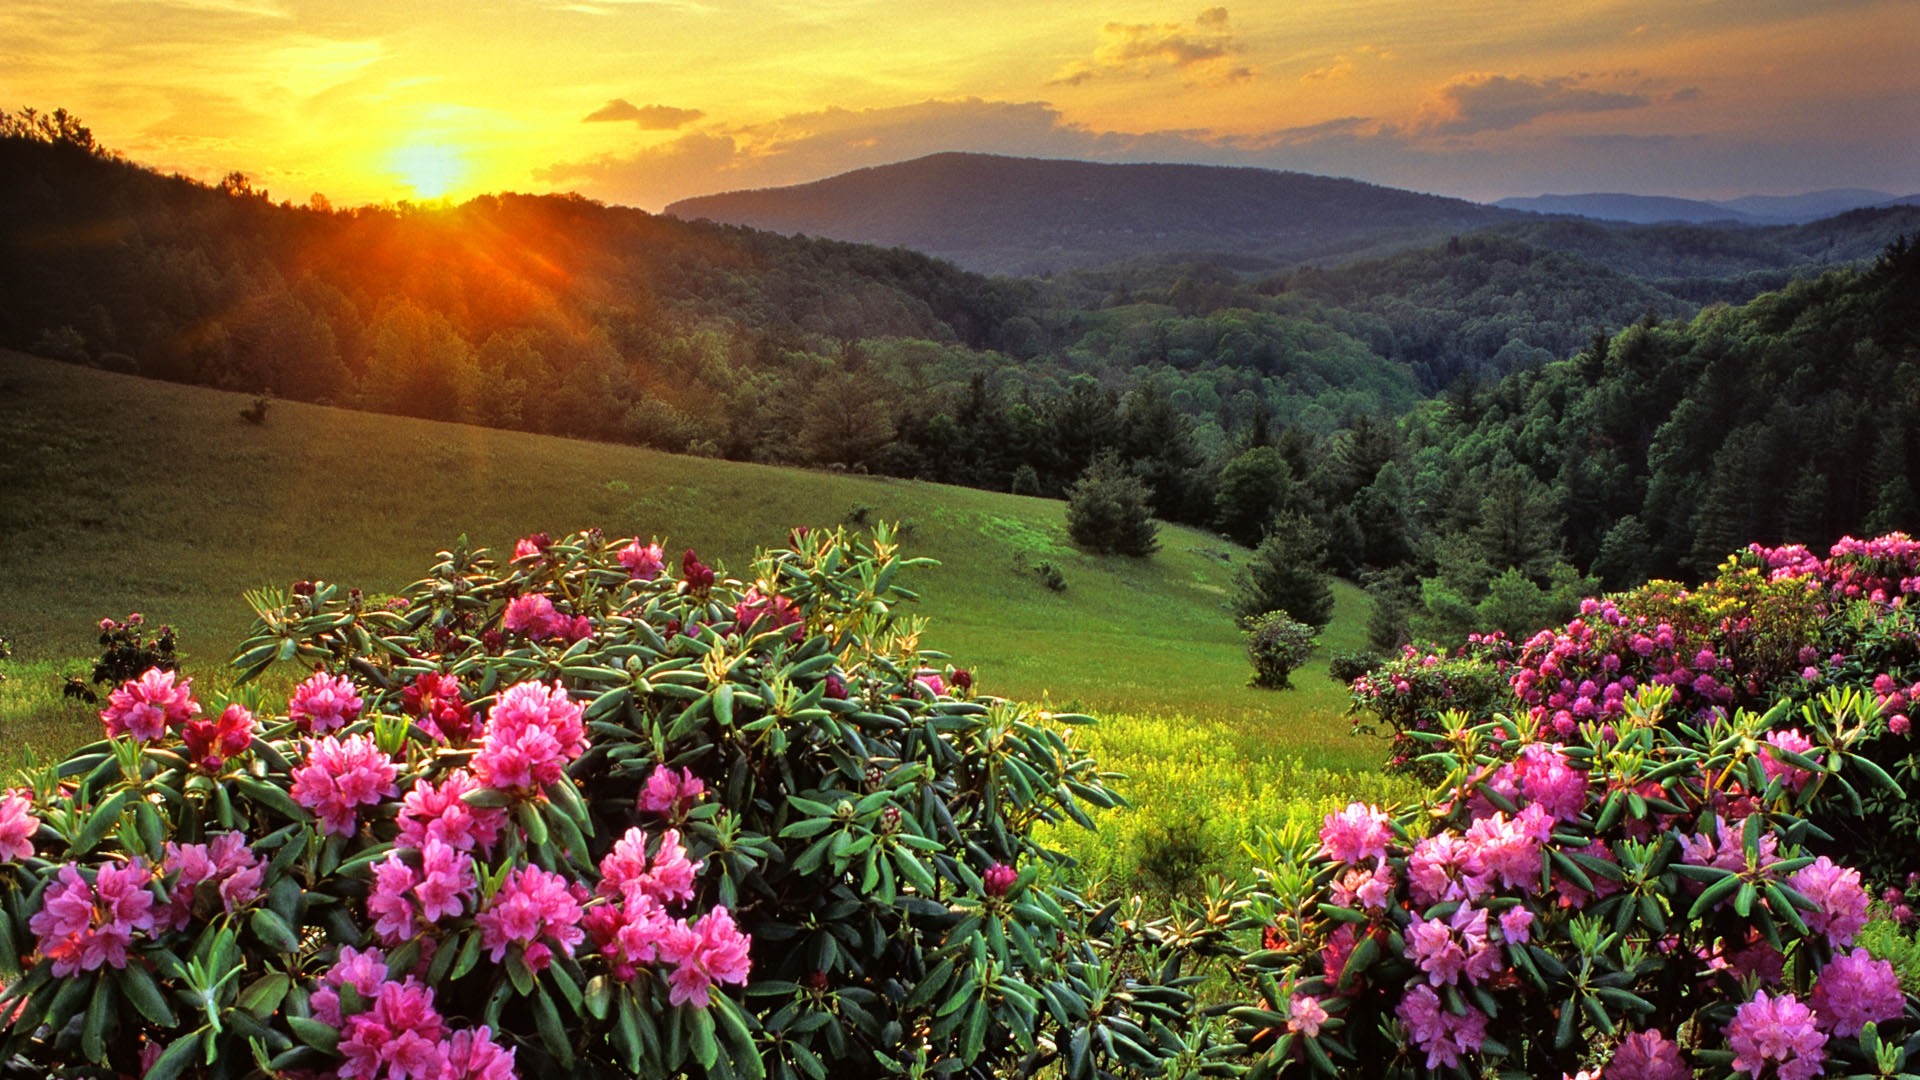 Beautiful Mountain Top Sunset Wallpaper - High Definition, High